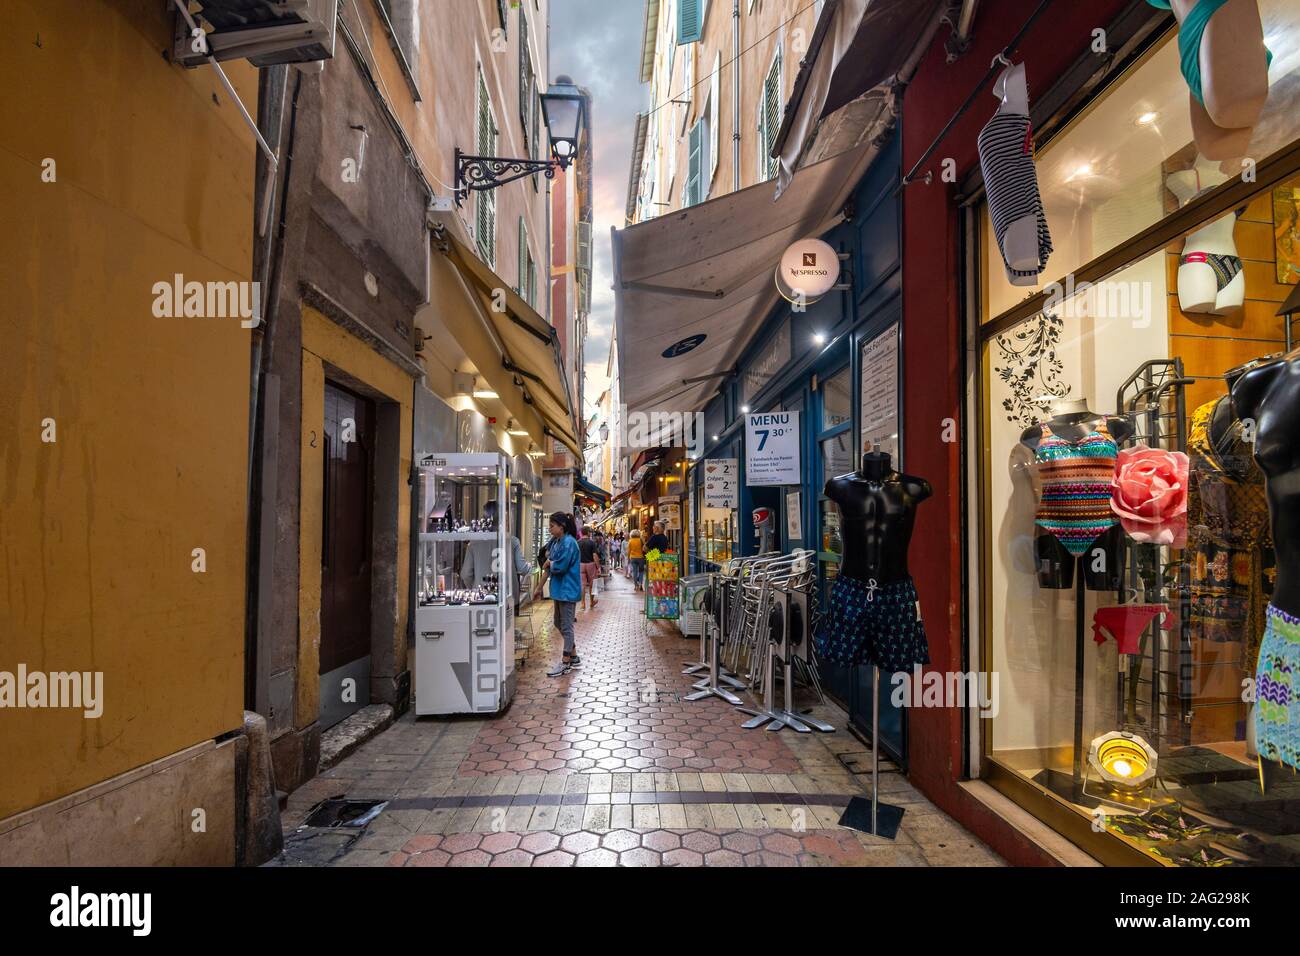 Touristen Shop eine sehr schmale Gasse voller Cafes und Geschäfte in der Altstadt von Nizza, Frankreich, an der Französischen Riviera. Stockfoto